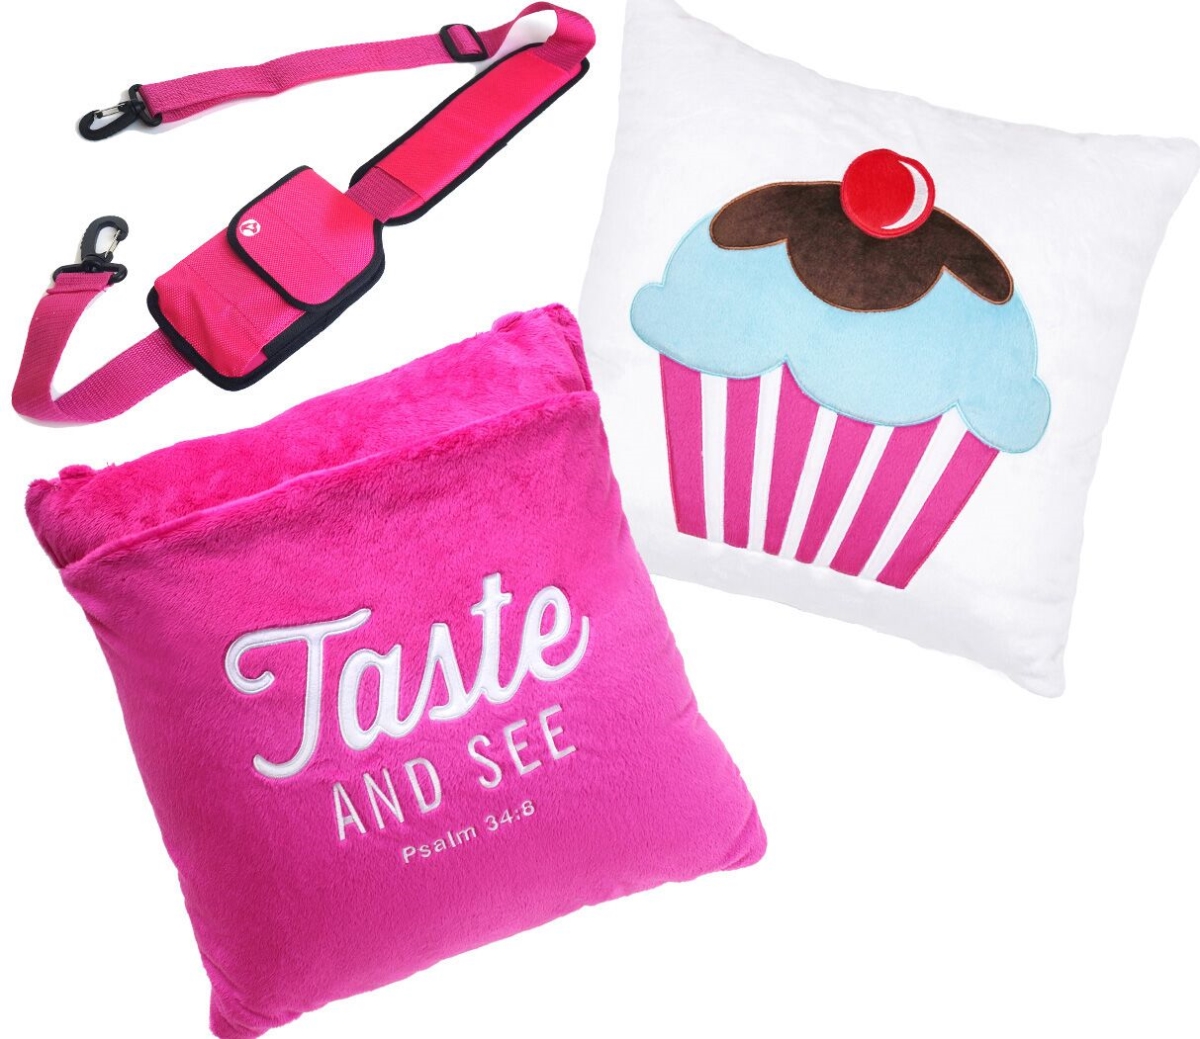 1001 Cupcake Plush Travel Pillow - Pink & White